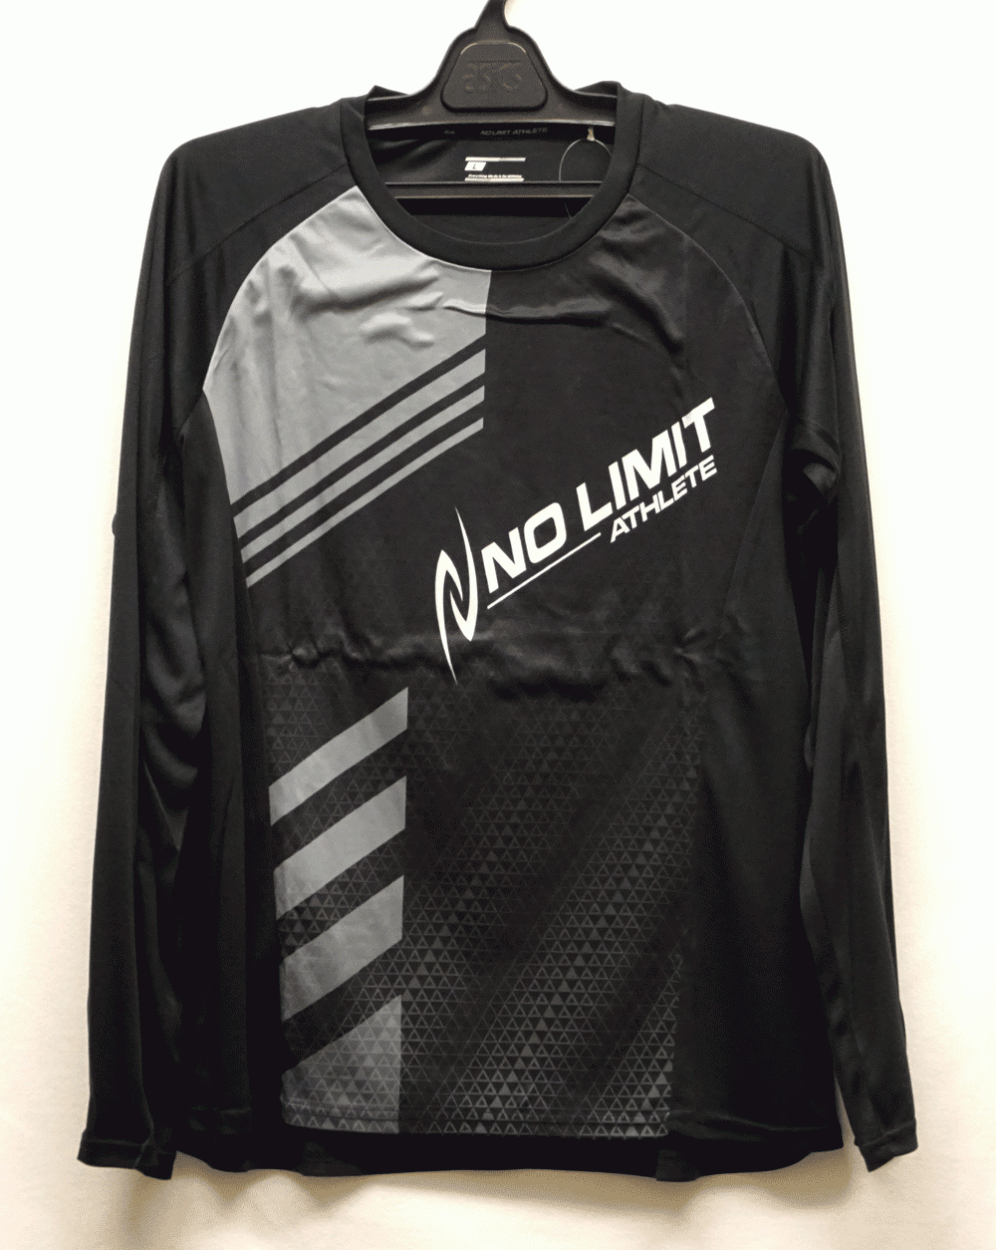 陸上ウェア ニシスポーツ ウインドカットロングスリーブシャツ N62-204 NISHI 長袖シャツ